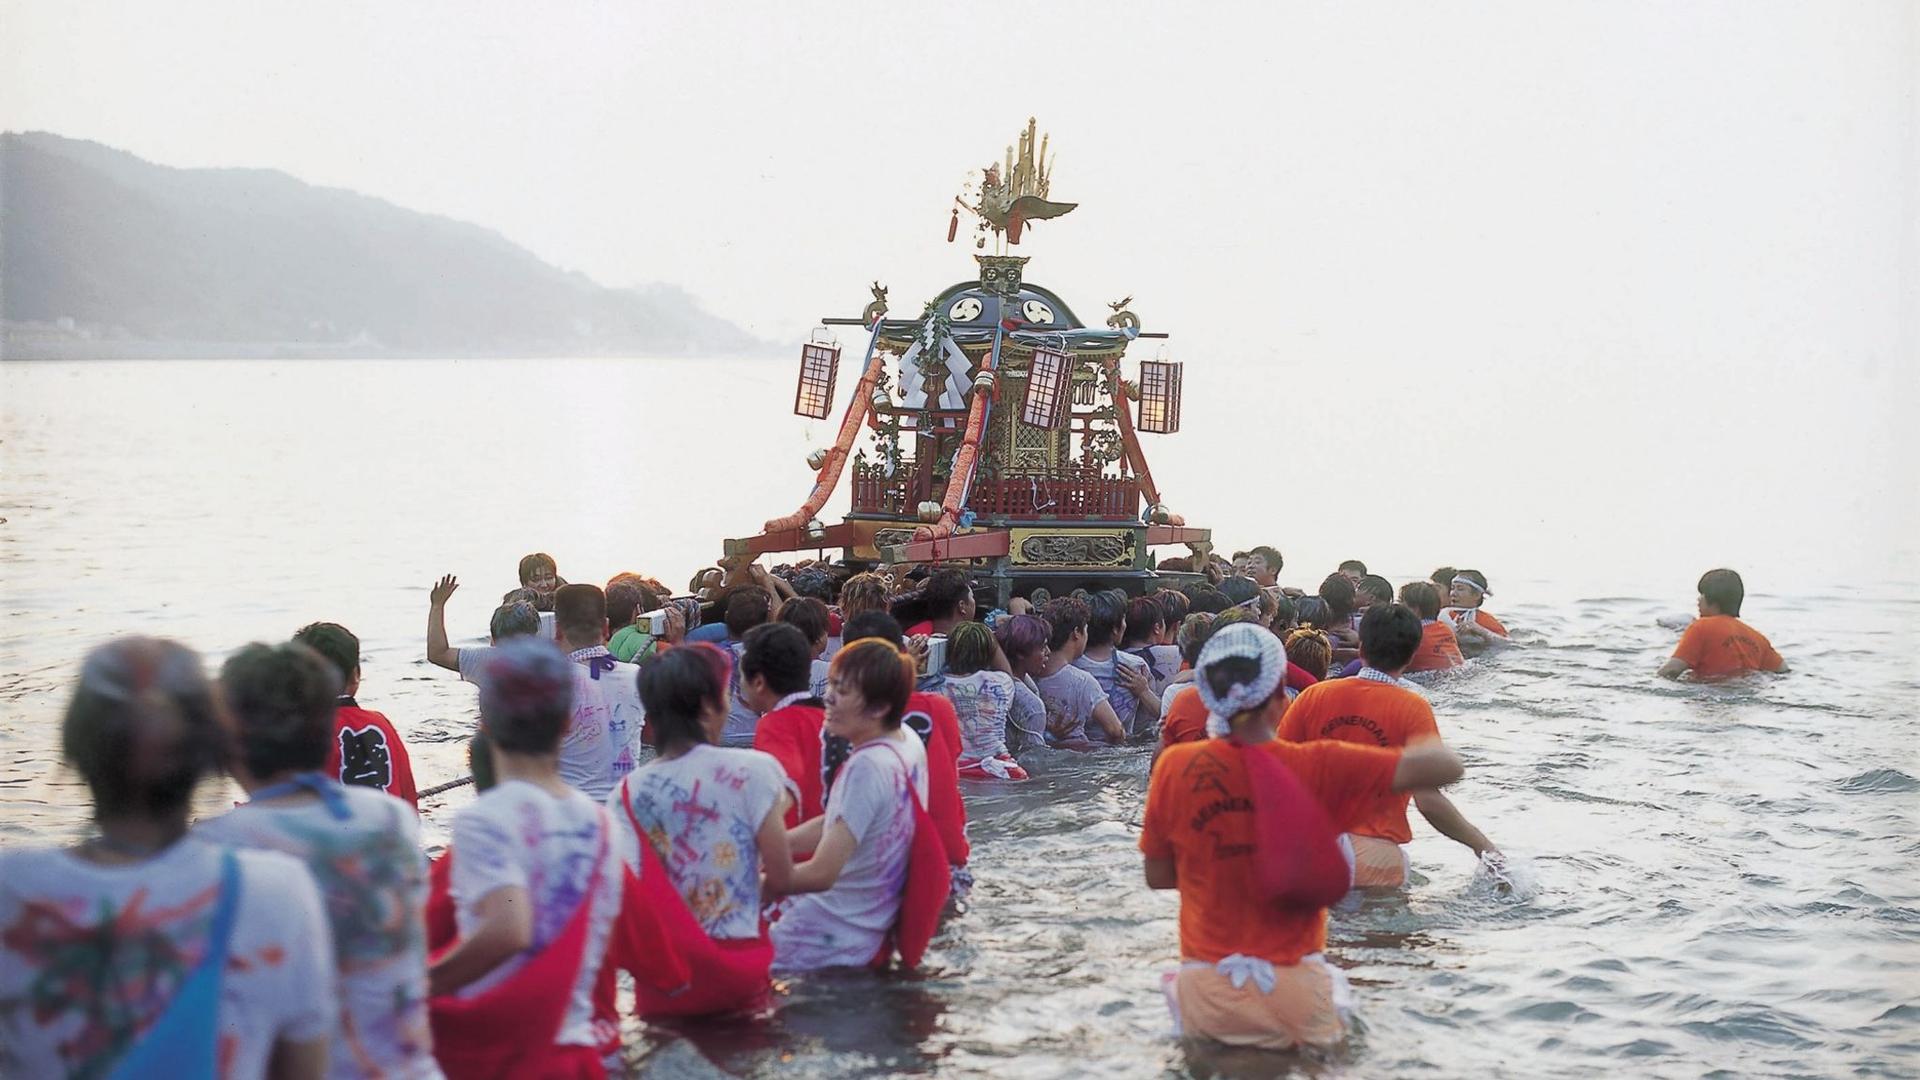 Wajima Taisai Festivals